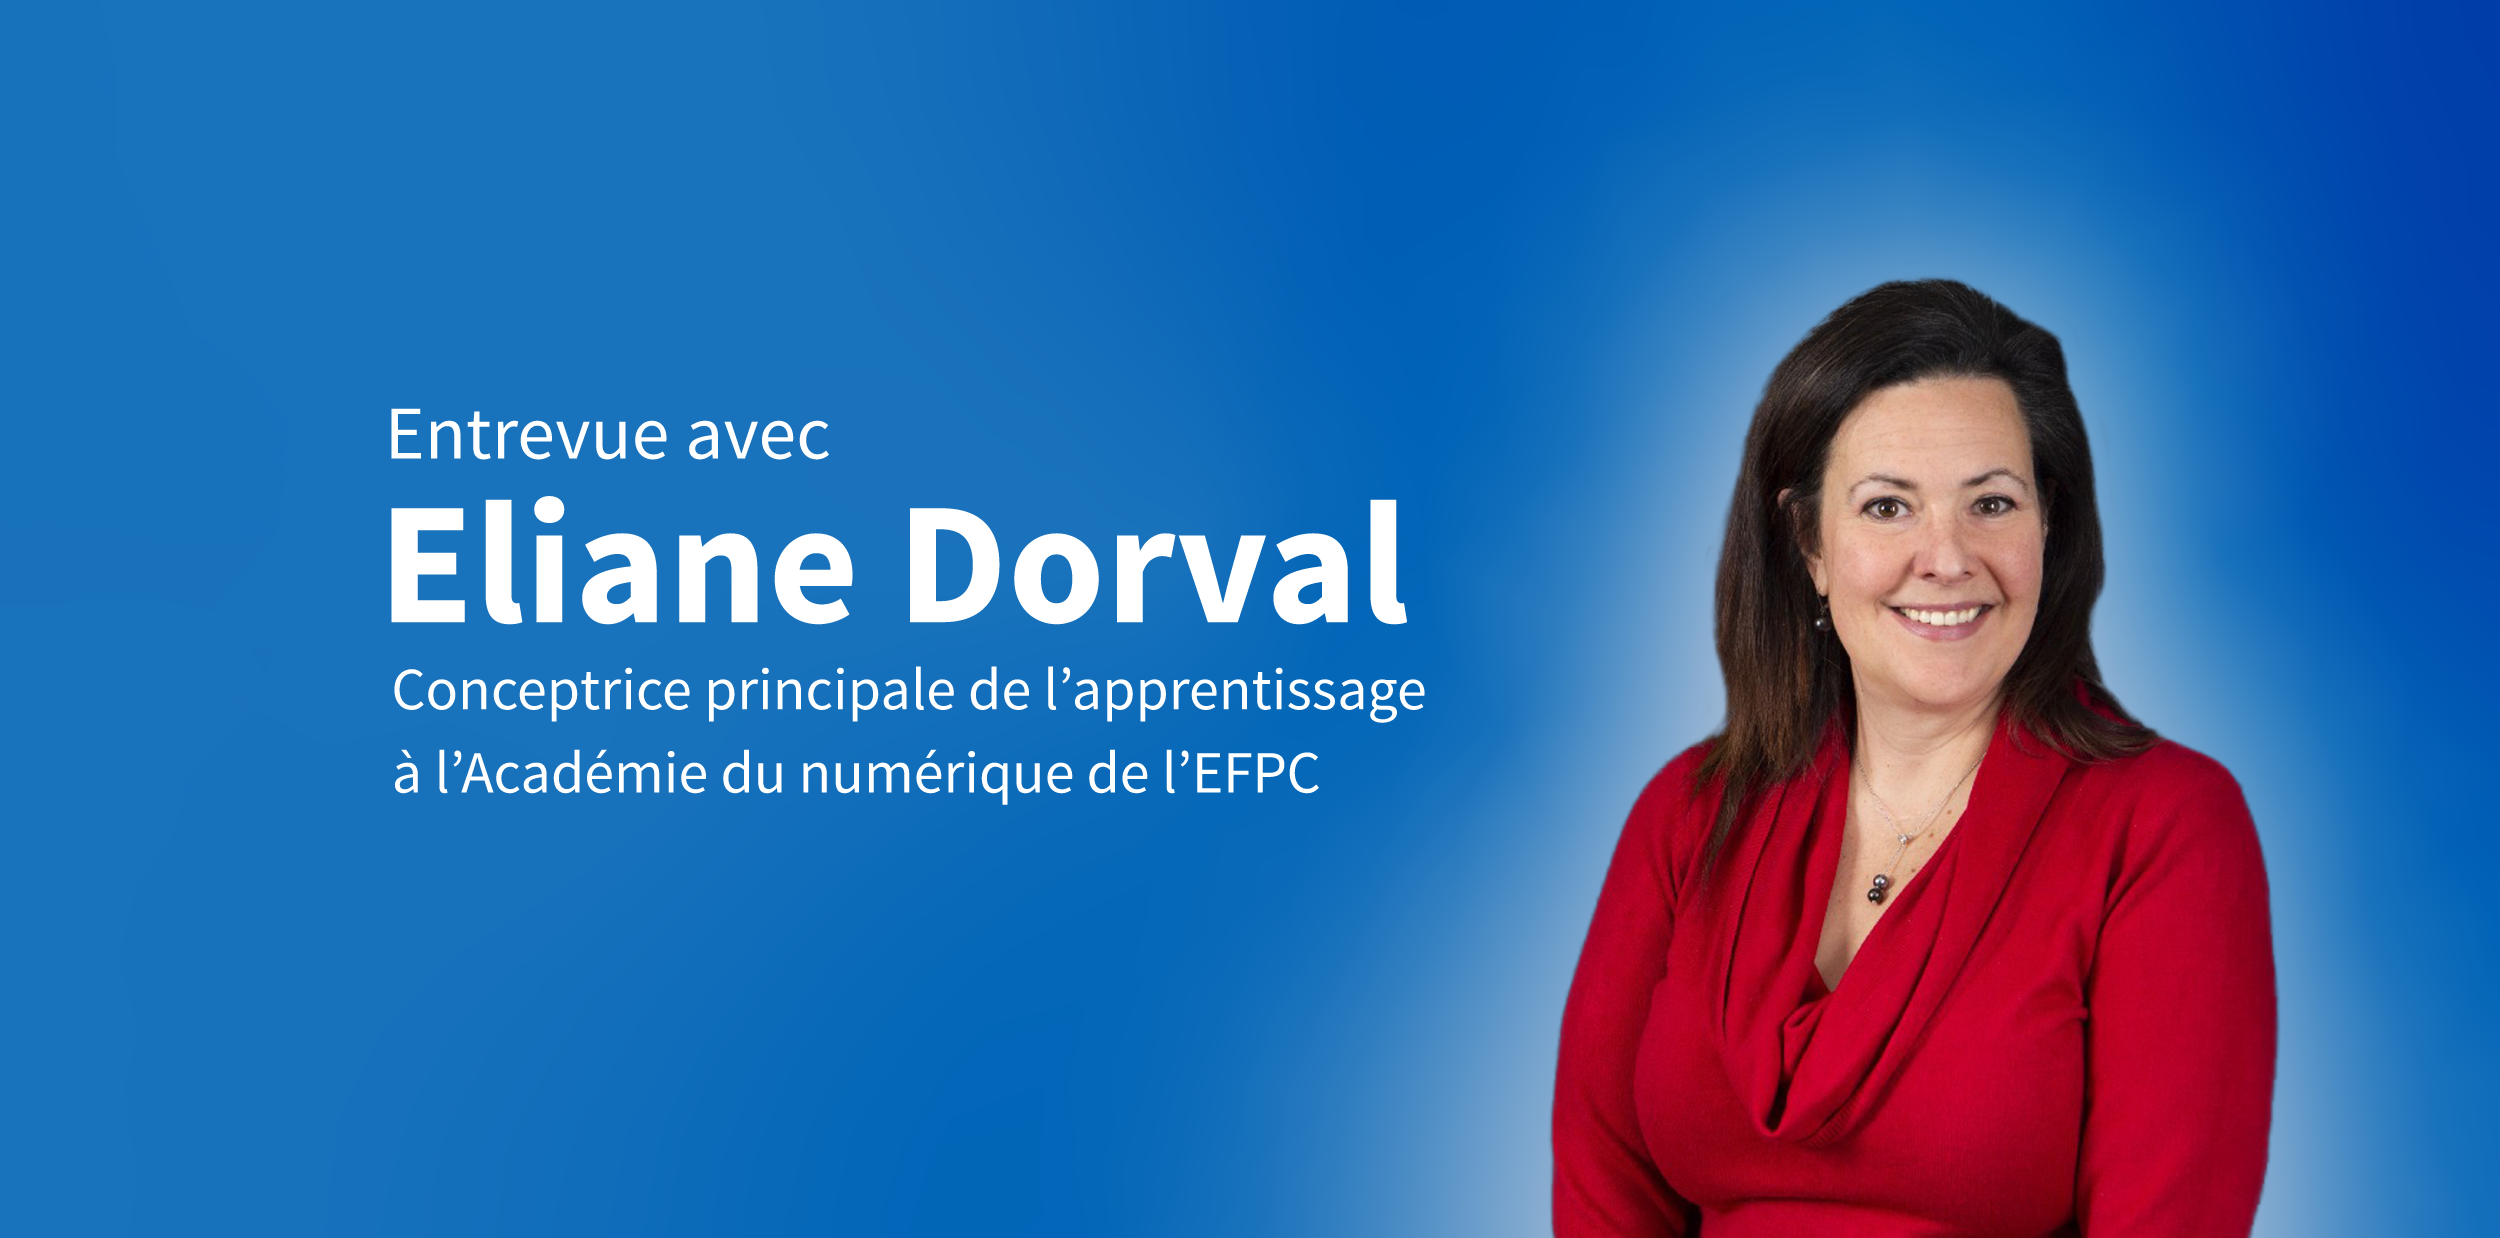 Eliane Dorval, conceptrice principale de l’apprentissage, École de la fonction publique du Canada (EFPC).